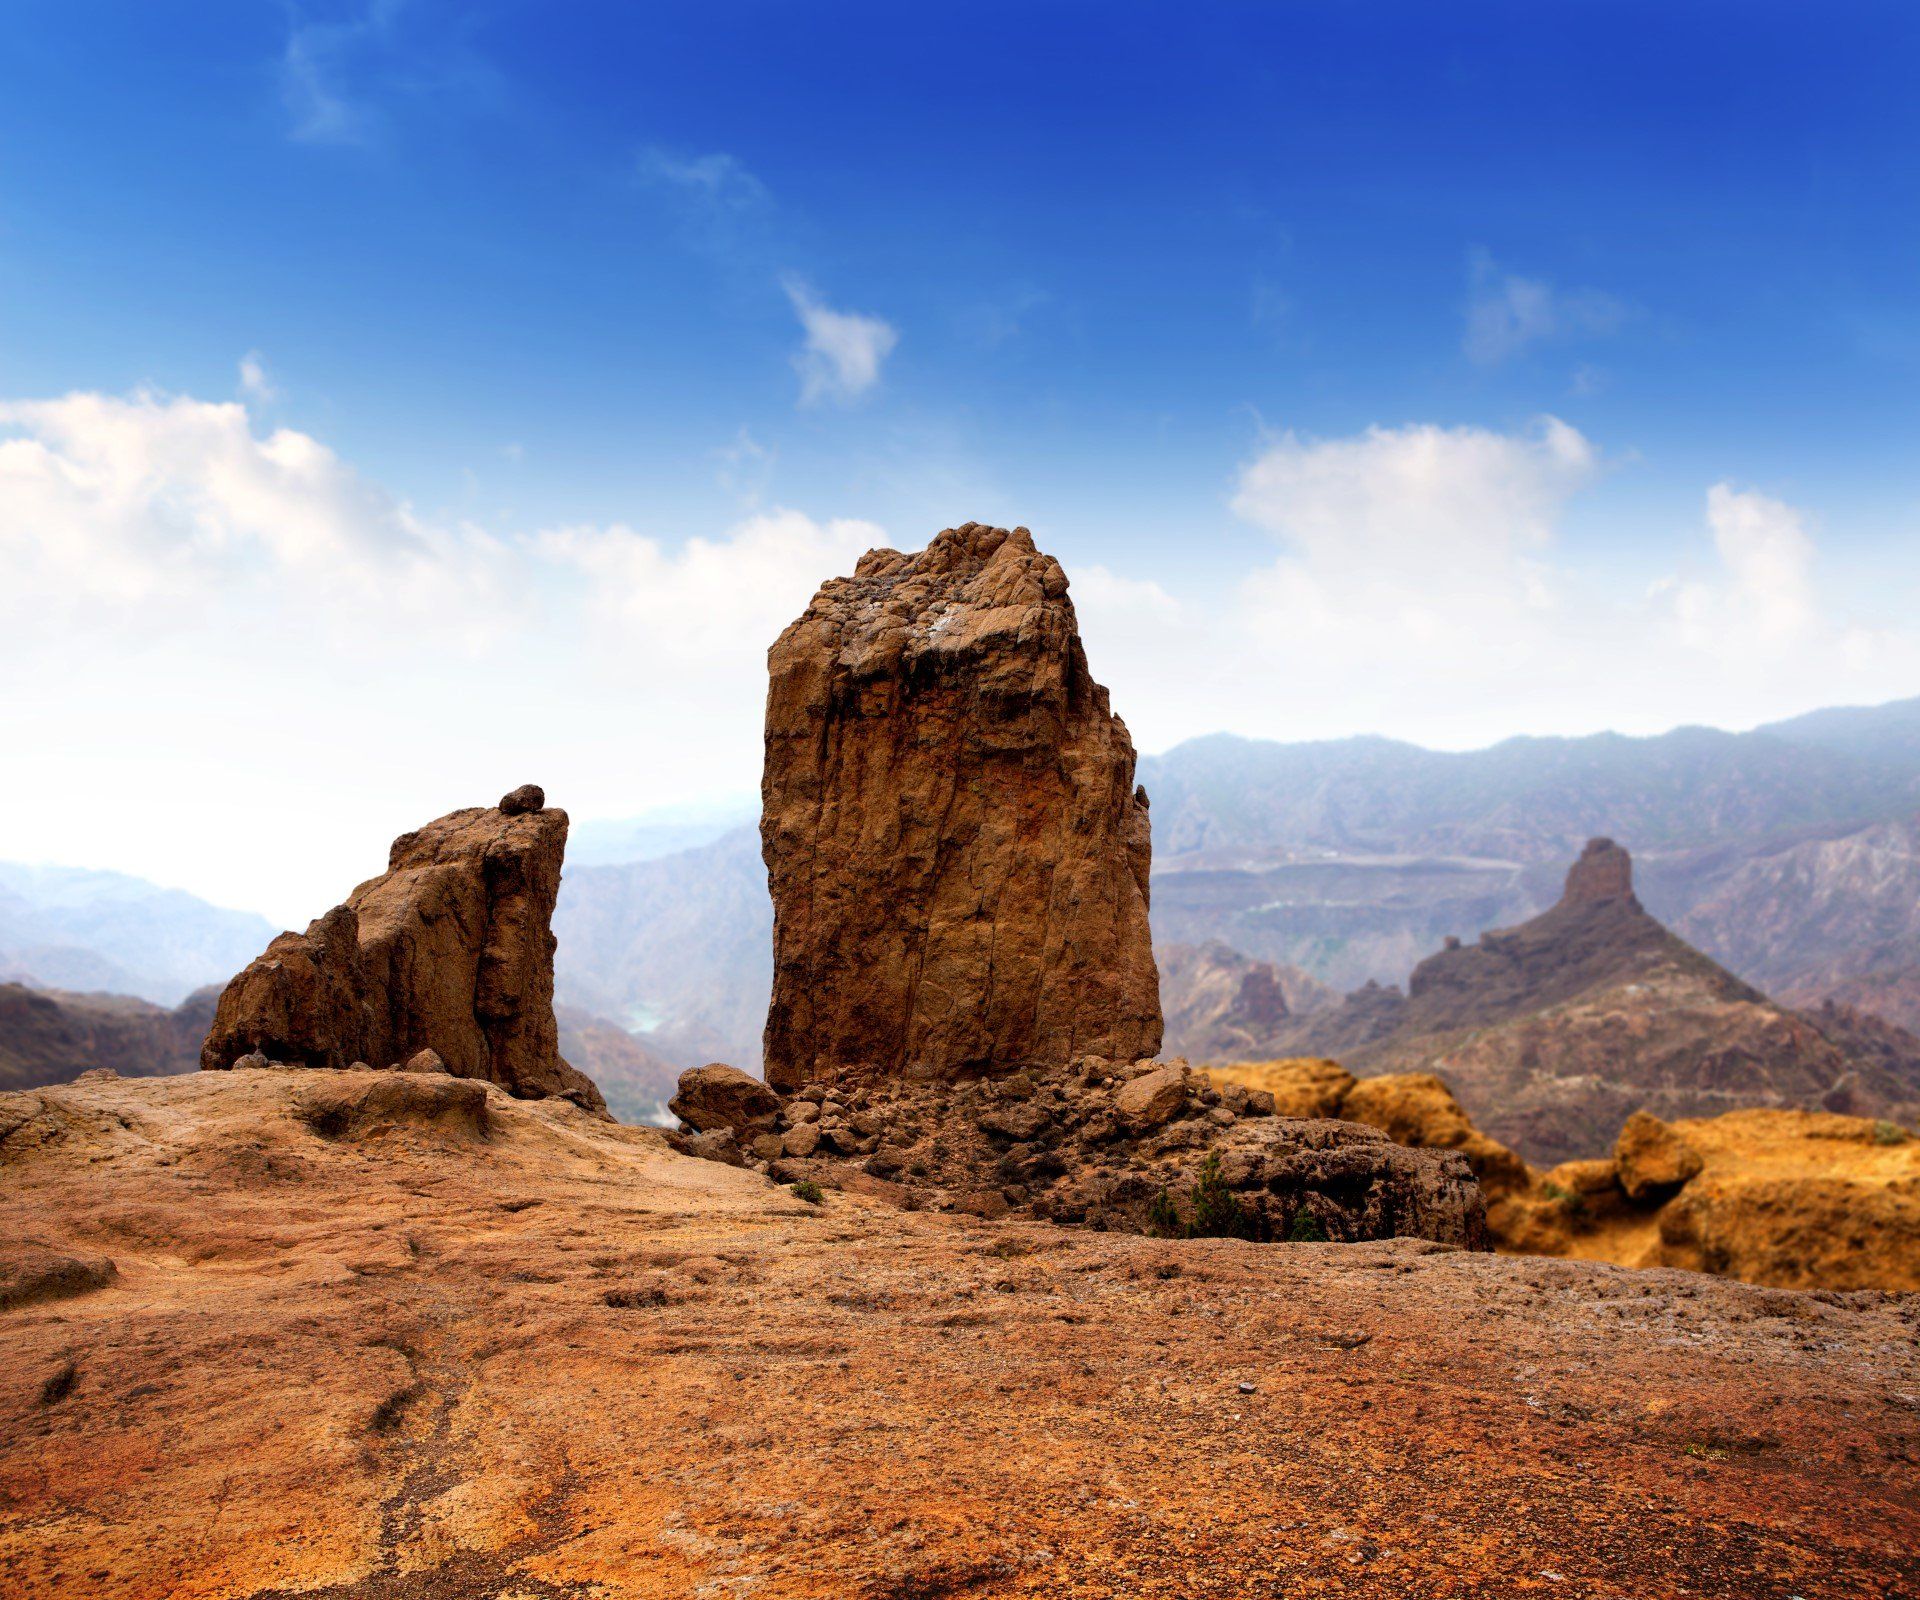 The volcanic rock of Roque Nublo Tejeda, central Gran Canaria